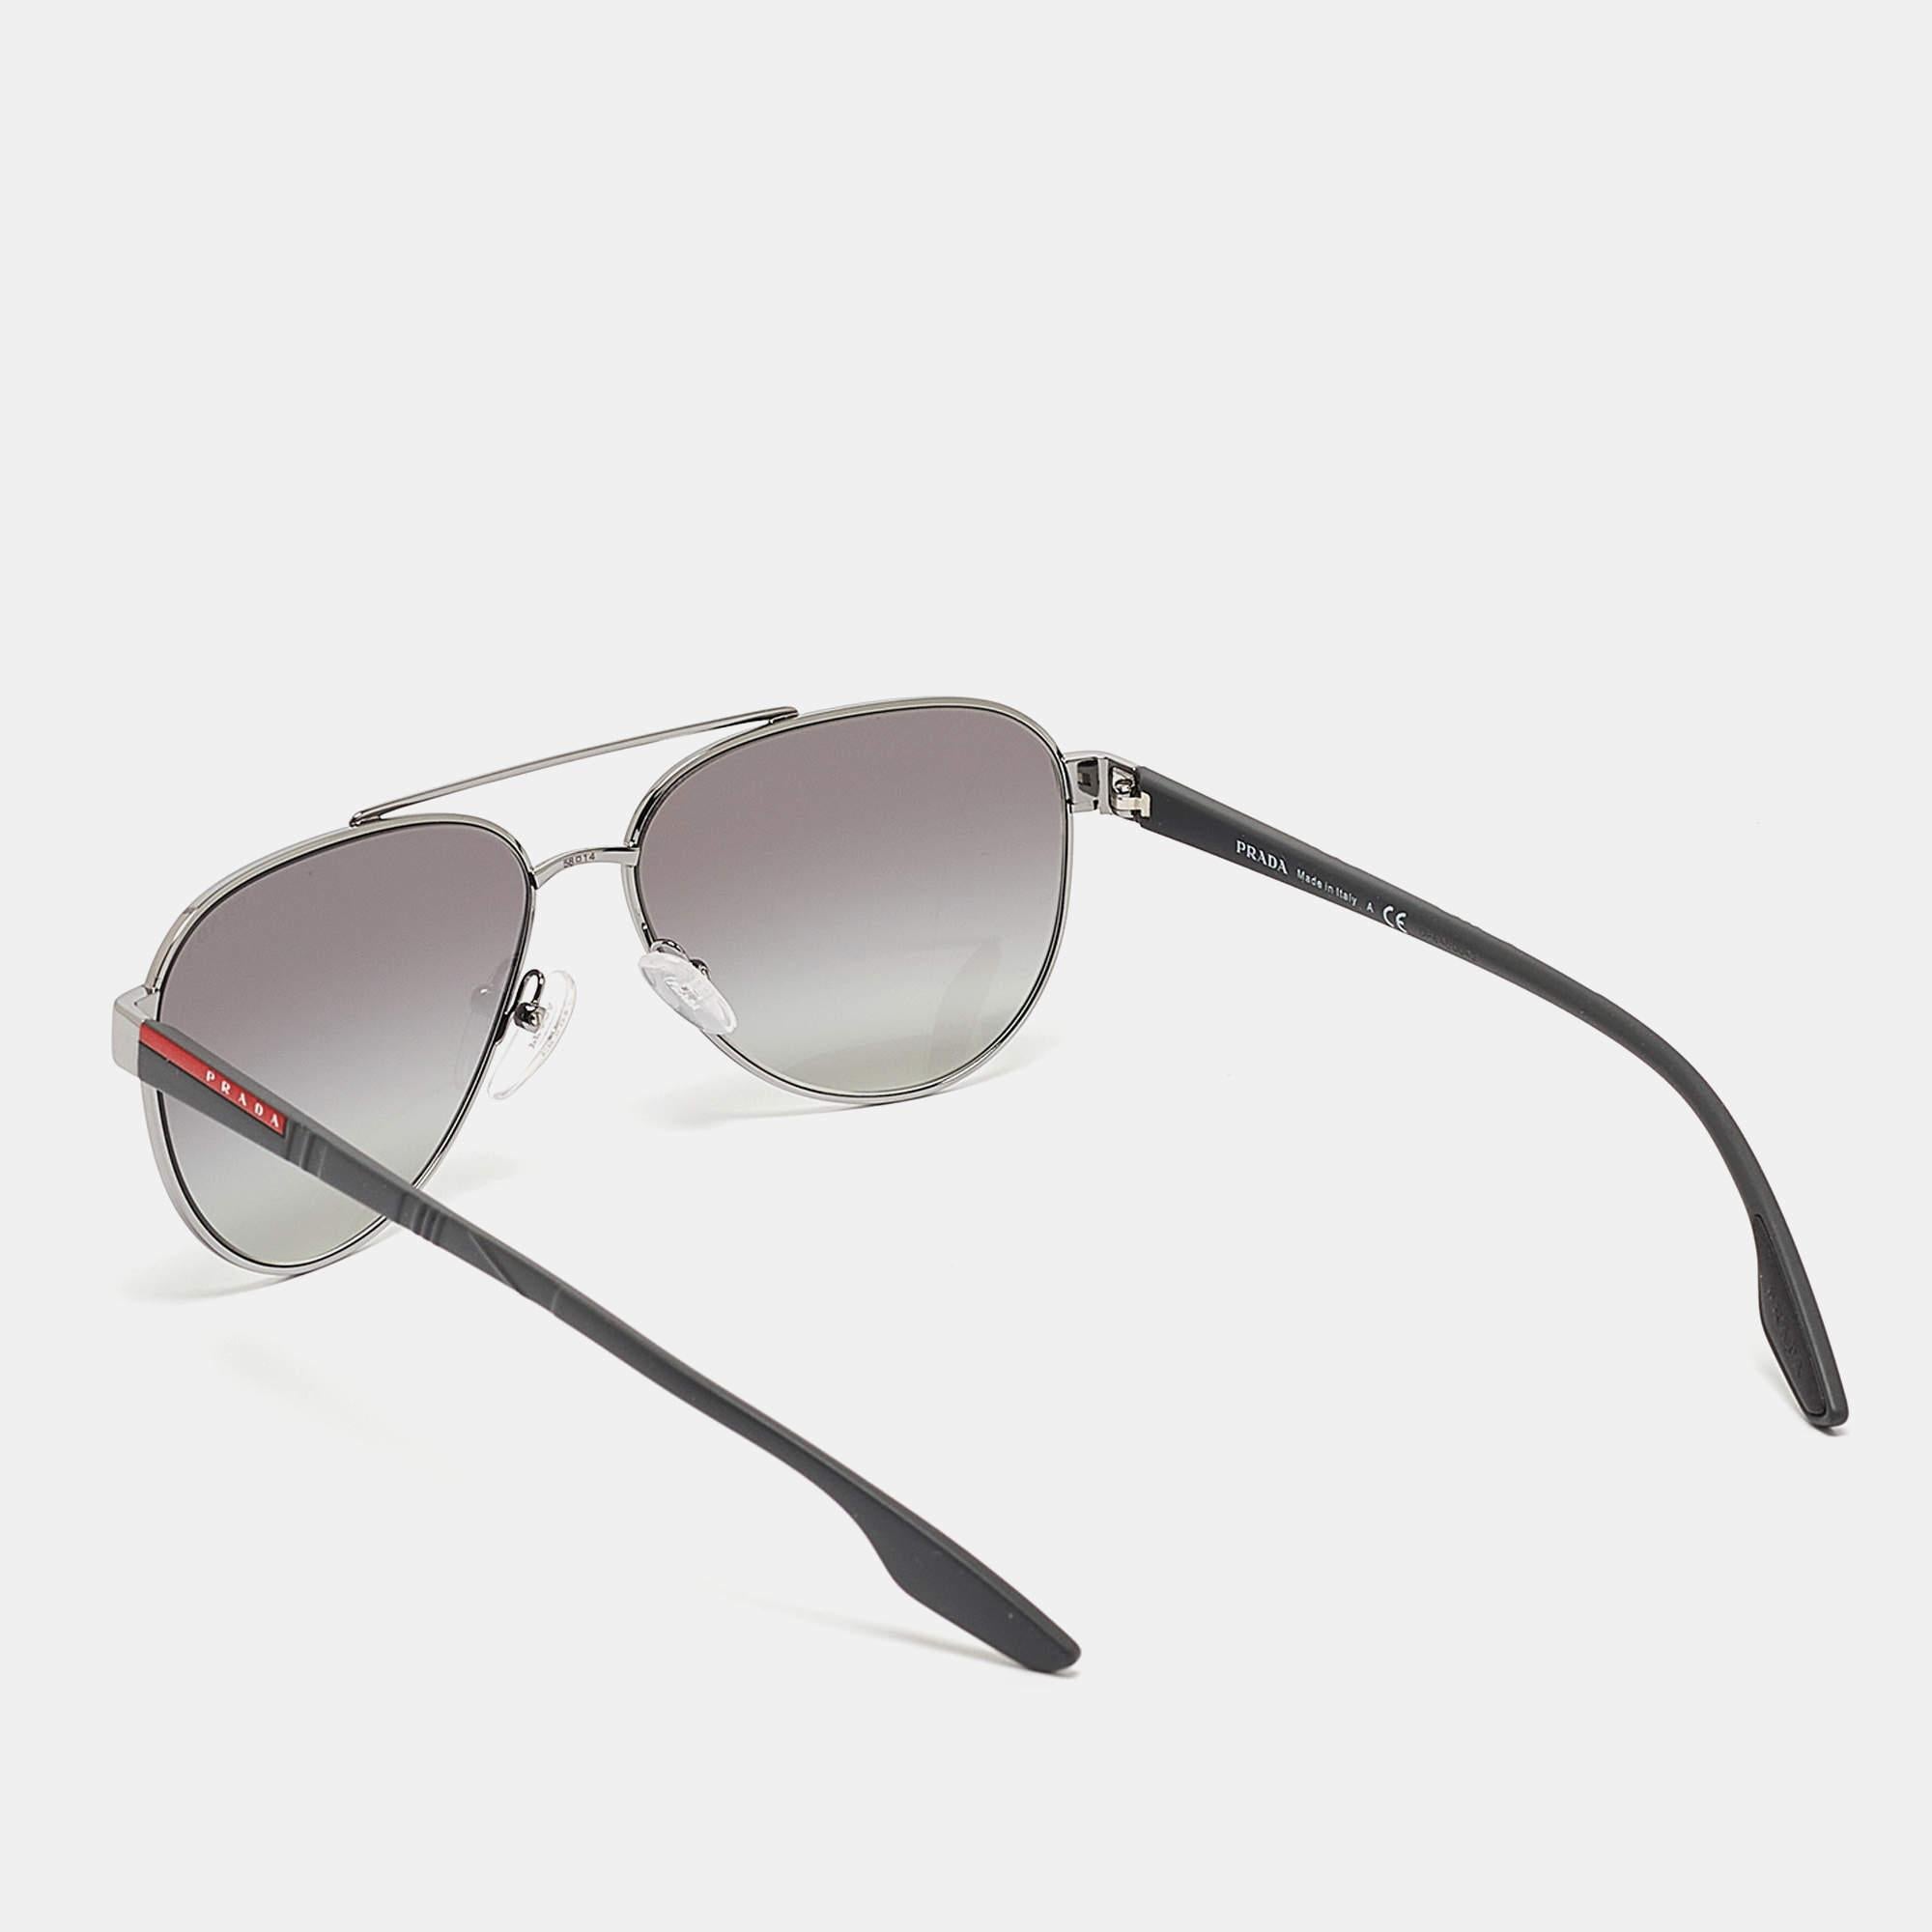 Profitez des journées ensoleillées avec style grâce à cette paire de lunettes de soleil signée Prada Sport. Créées avec expertise, ces lunettes de soleil de luxe sont dotées d'une monture bien conçue et de verres de qualité supérieure qui sont